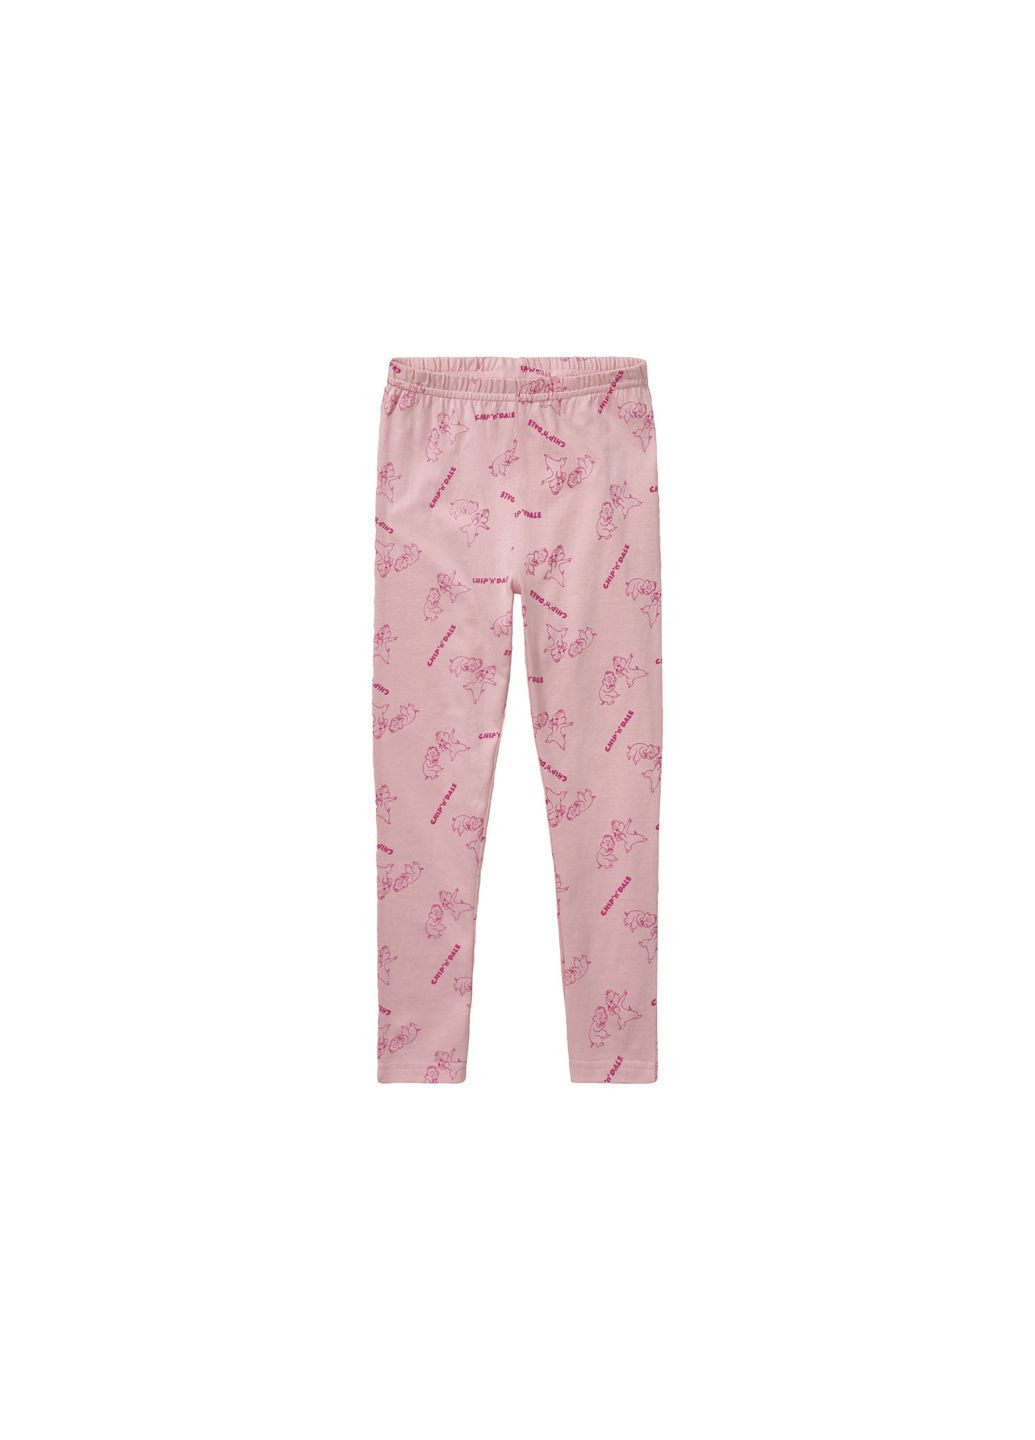 Розовая всесезон пижама для девочки лонгслив + брюки Pepperts